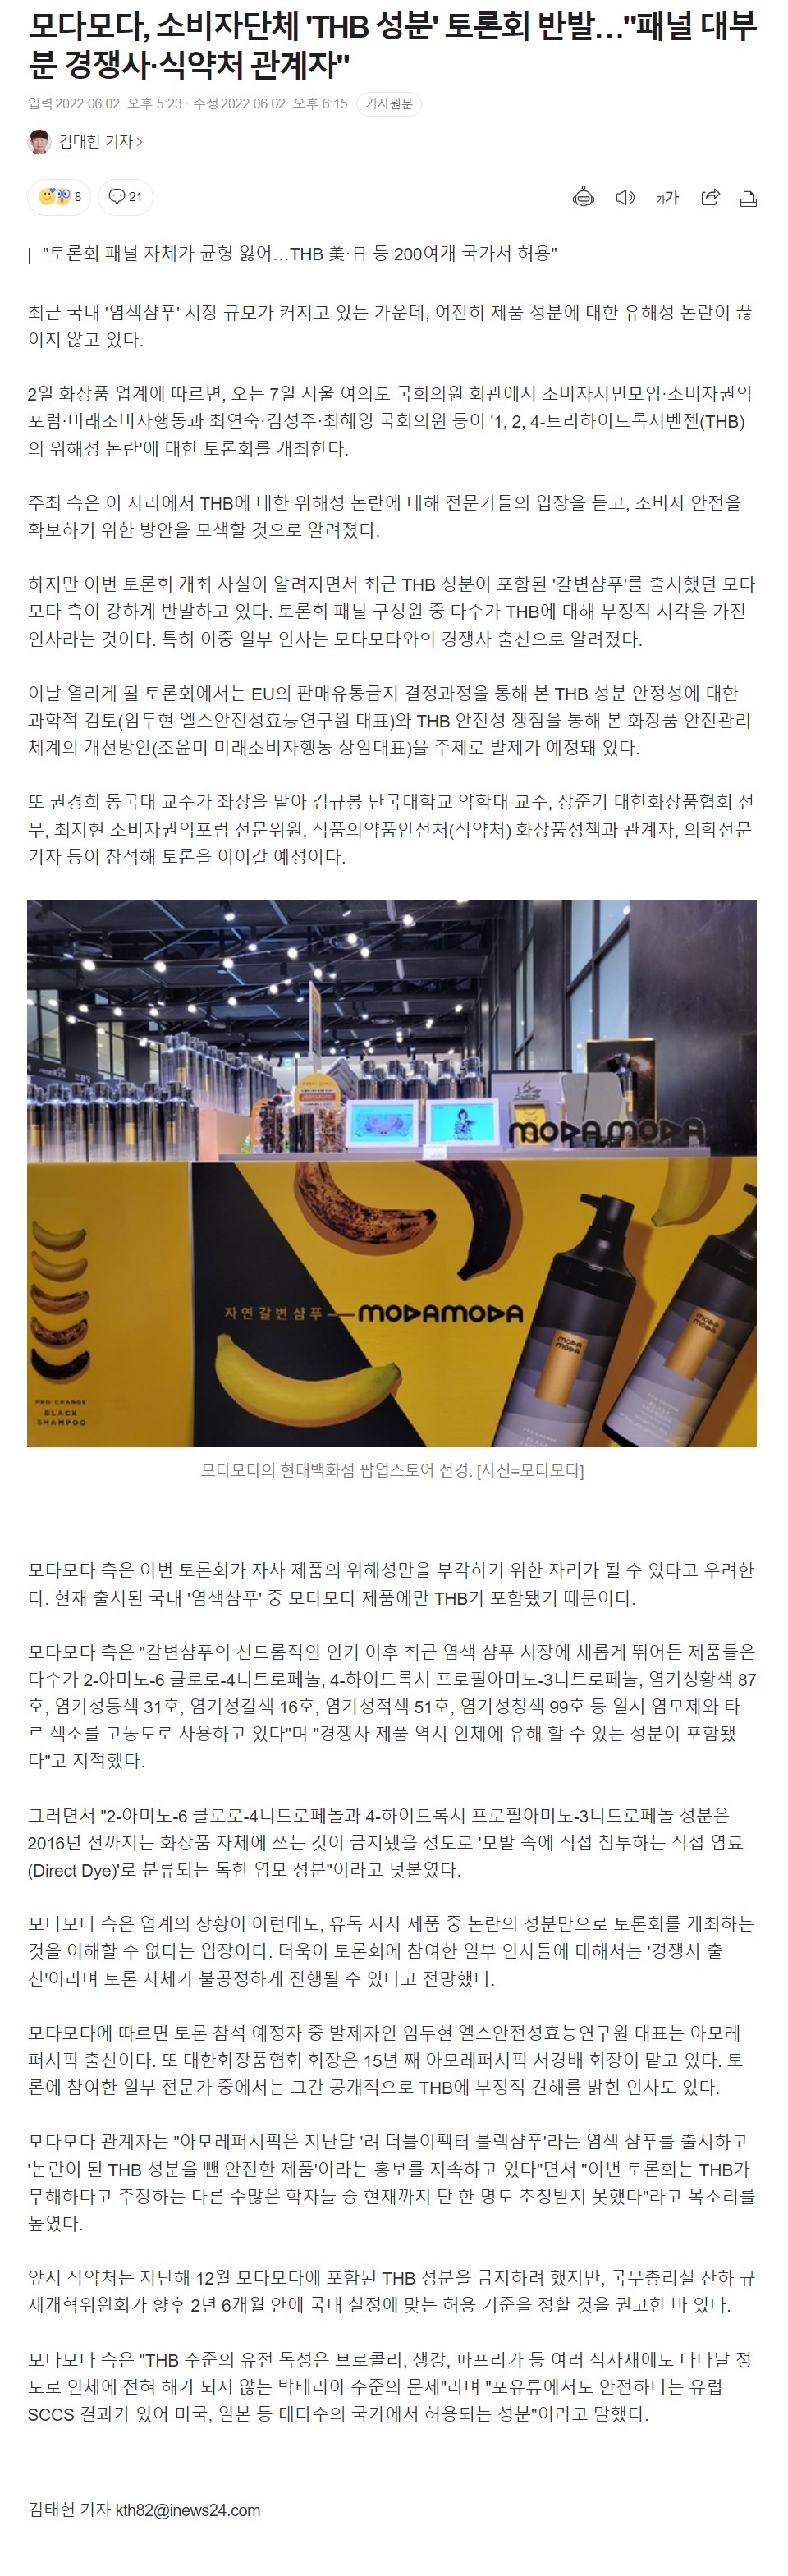 모다모다, 소비자단체 'THB 성분' 토론회 반발